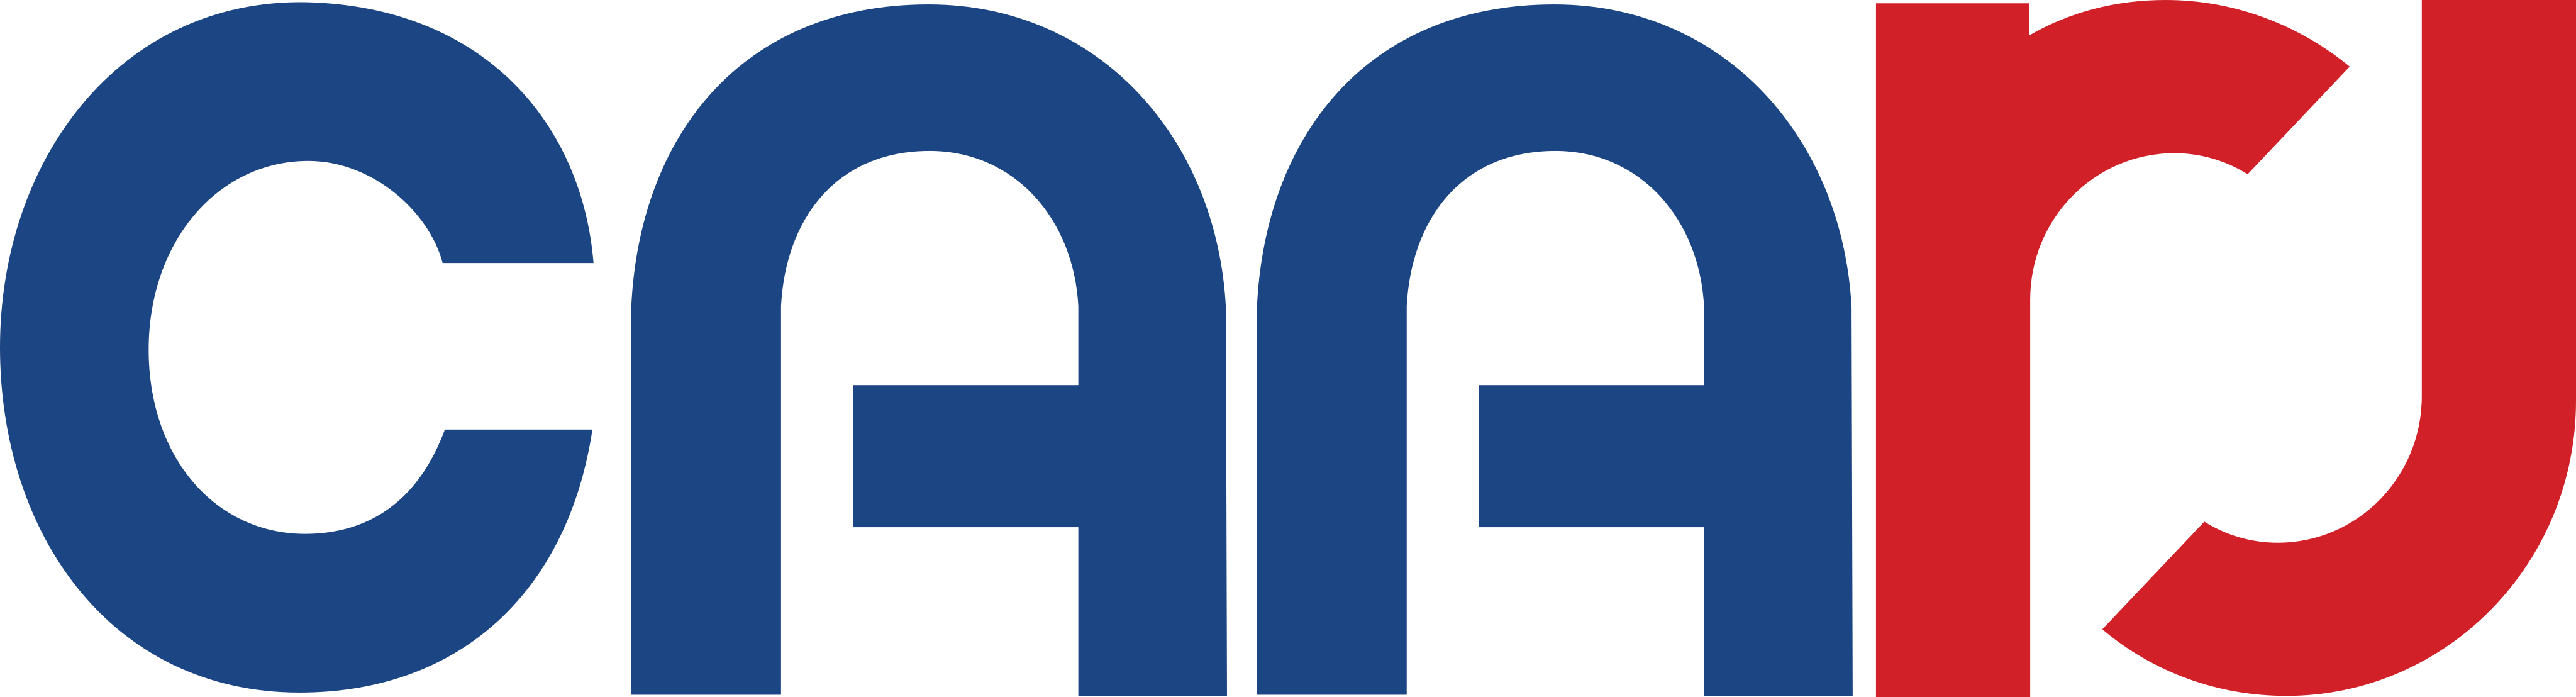 CAARJ Logo.